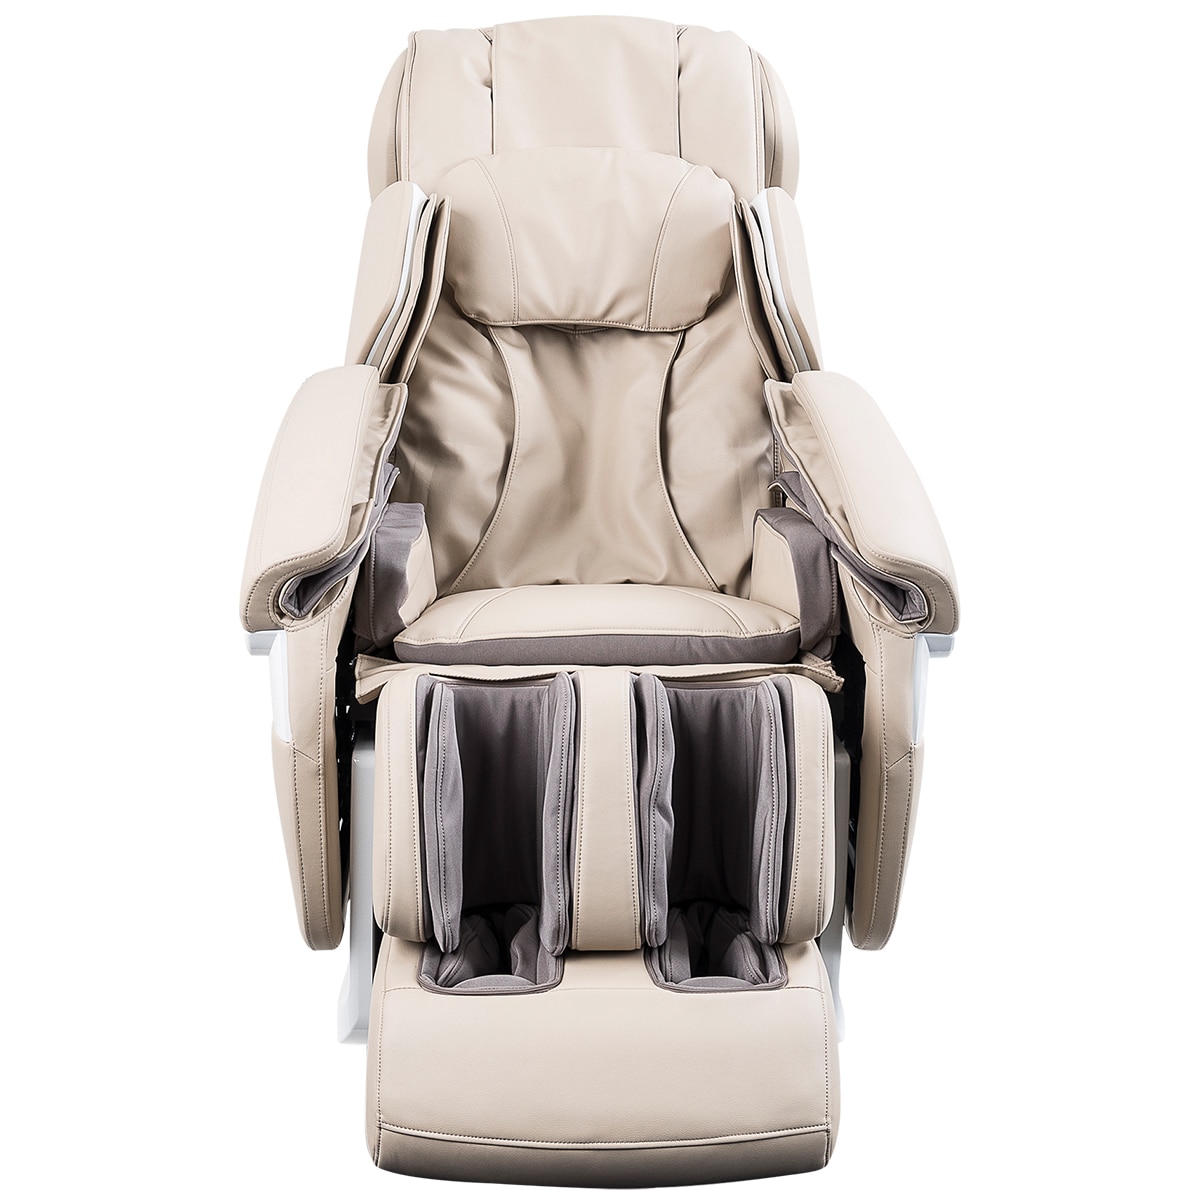 Platinum Massage Chair Costco Australia